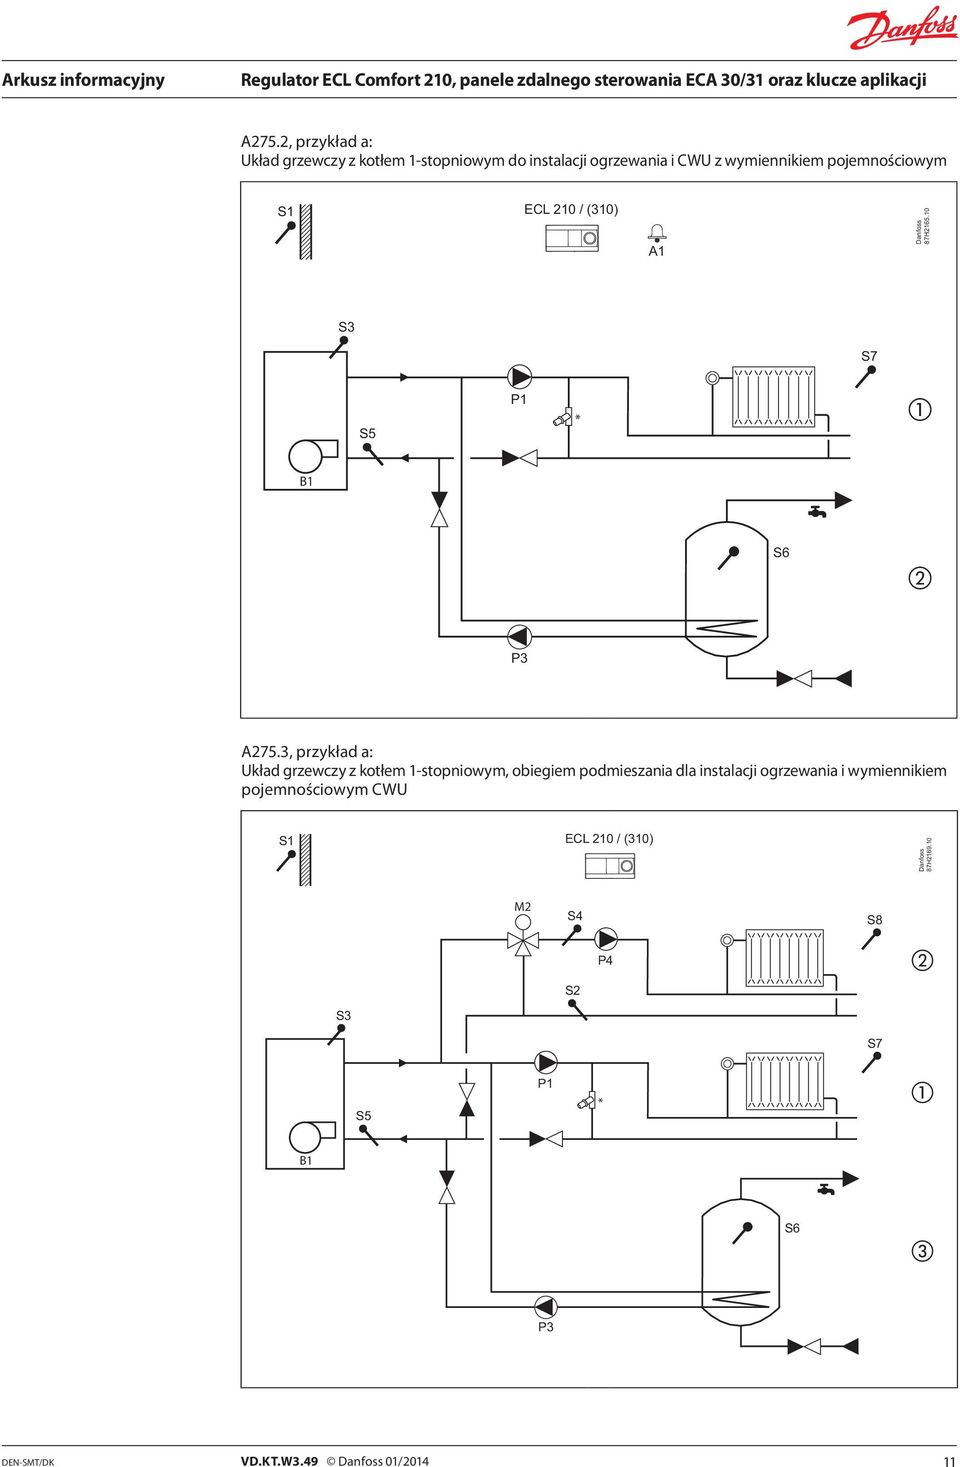 3, przykład a: Układ grzewczy z kotłem 1-stopniowym, obiegiem podmieszania dla instalacji ogrzewania